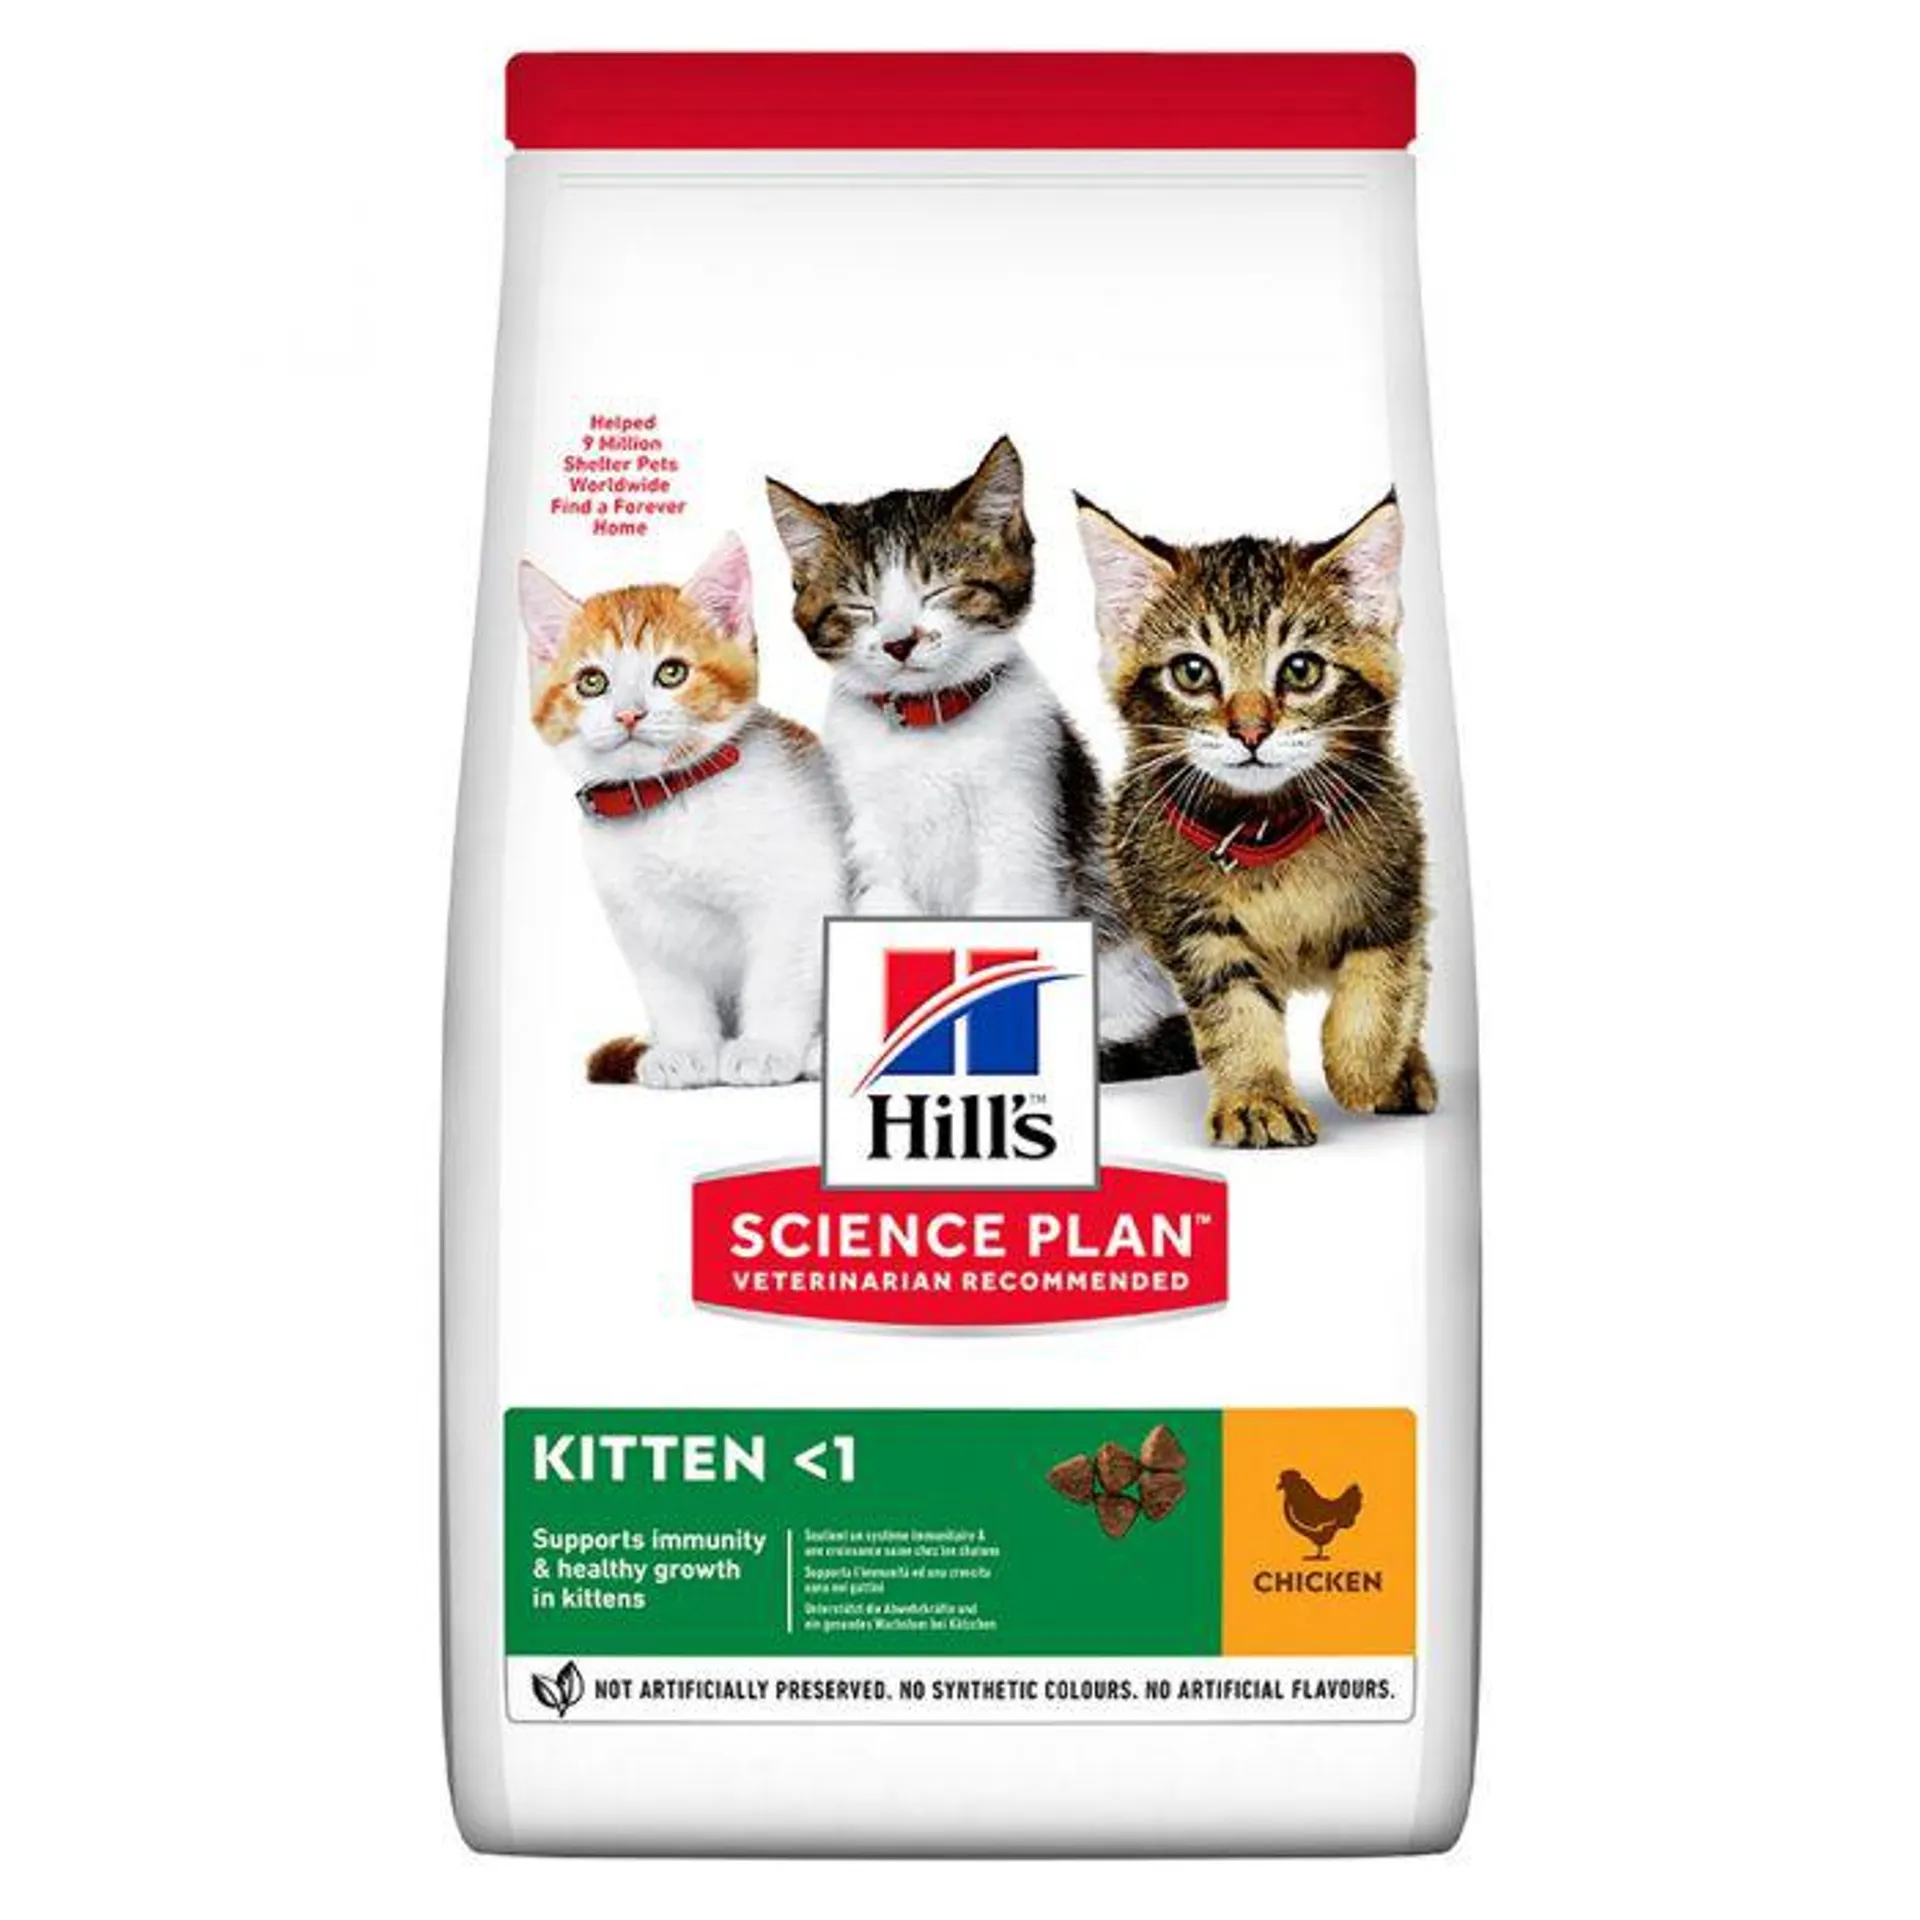 Hills Science Plan Kitten Food with Chicken 300g